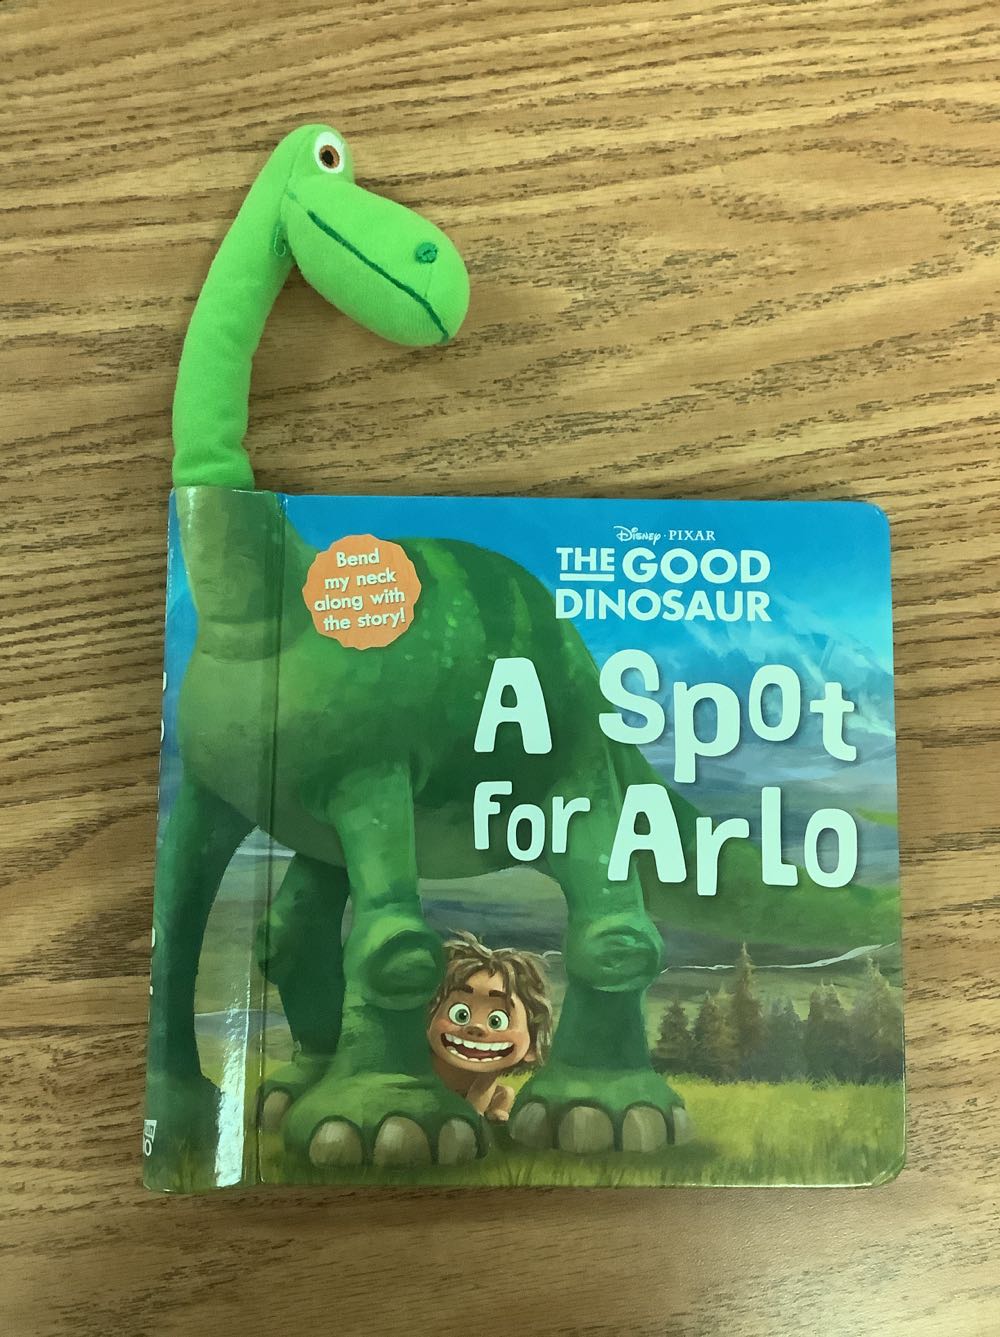 Disney•Pixar The Good Dinosaur: A Spot for Arlo - Bill Scollon (SFI Readerlink Dist) book collectible [Barcode 9780794431044] - Main Image 1